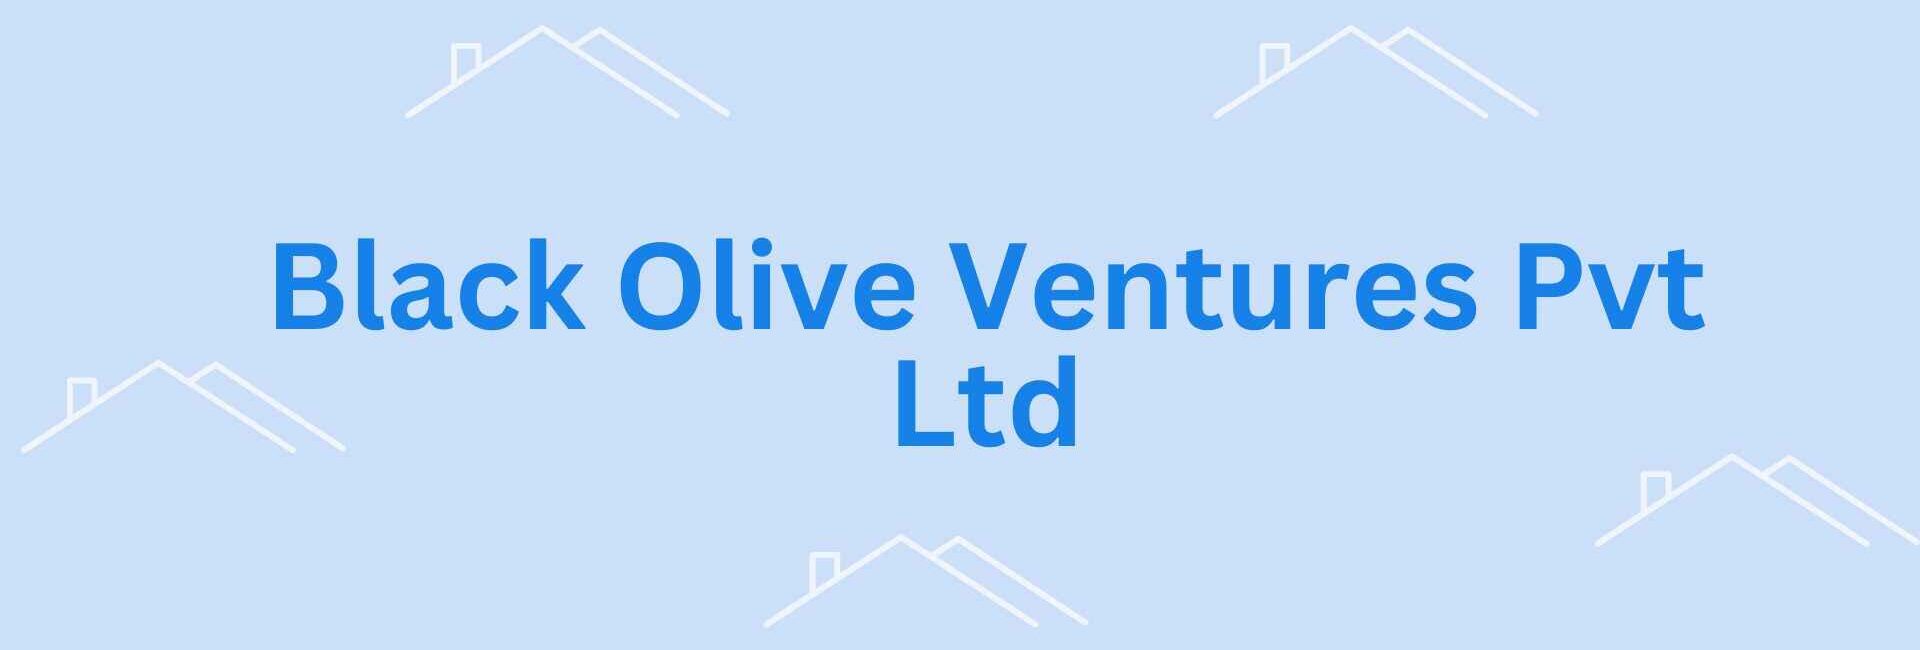 Black Olive Ventures Pvt Ltd- property valuation services in Noida